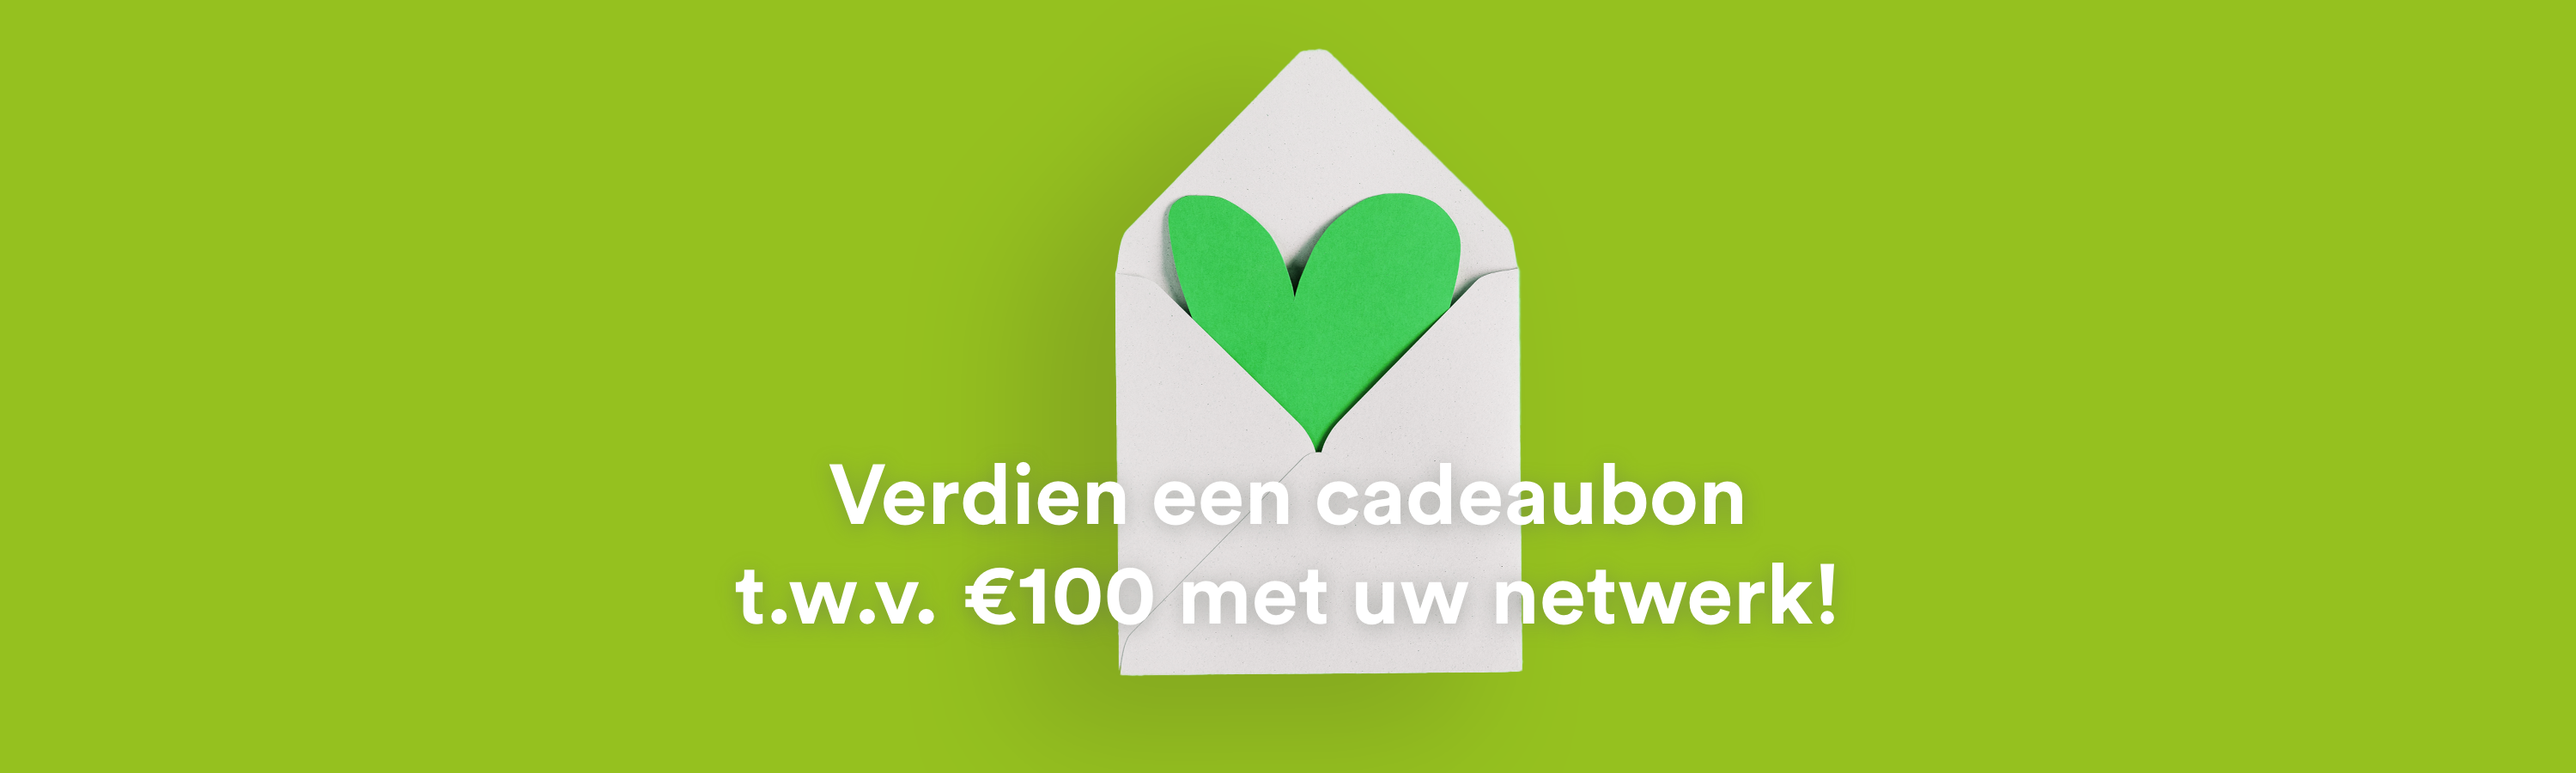 Verdien een cadeaubon t.w.v. €100 met uw netwerk!